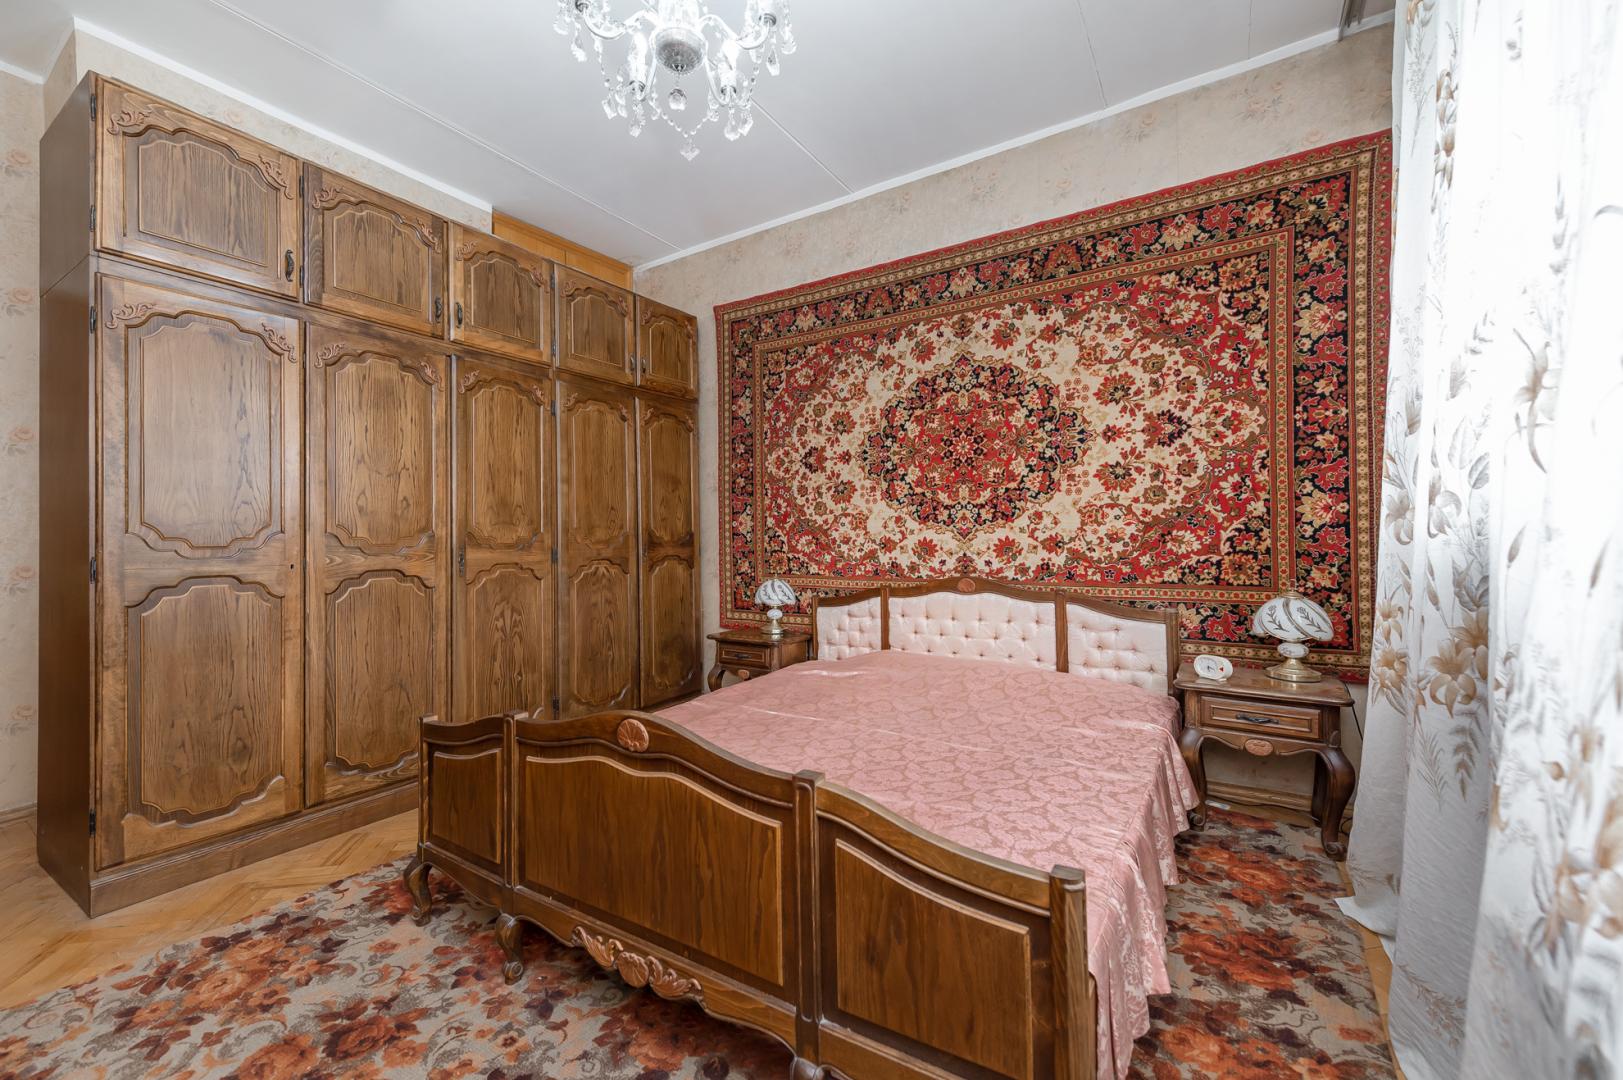 Продам квартиру в Москве по адресу Астраханский переулок, 10/36, площадь 821 квм Недвижимость Москва (Россия) Продается большая, комфортабельная квартира в ведомственном, кирпичном доме 1990 года постройки